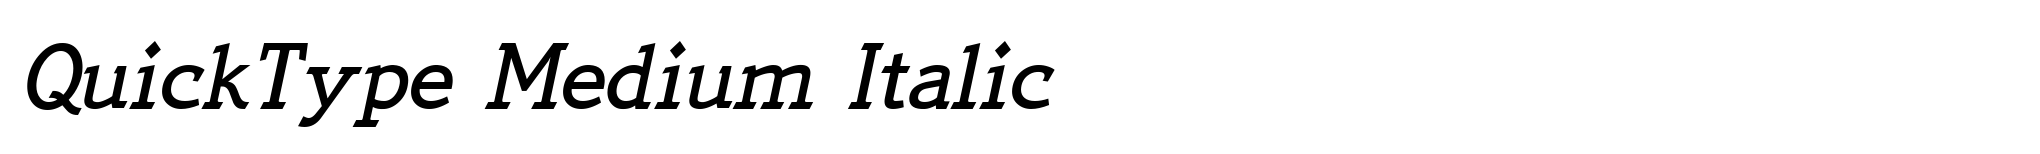 QuickType Medium Italic image